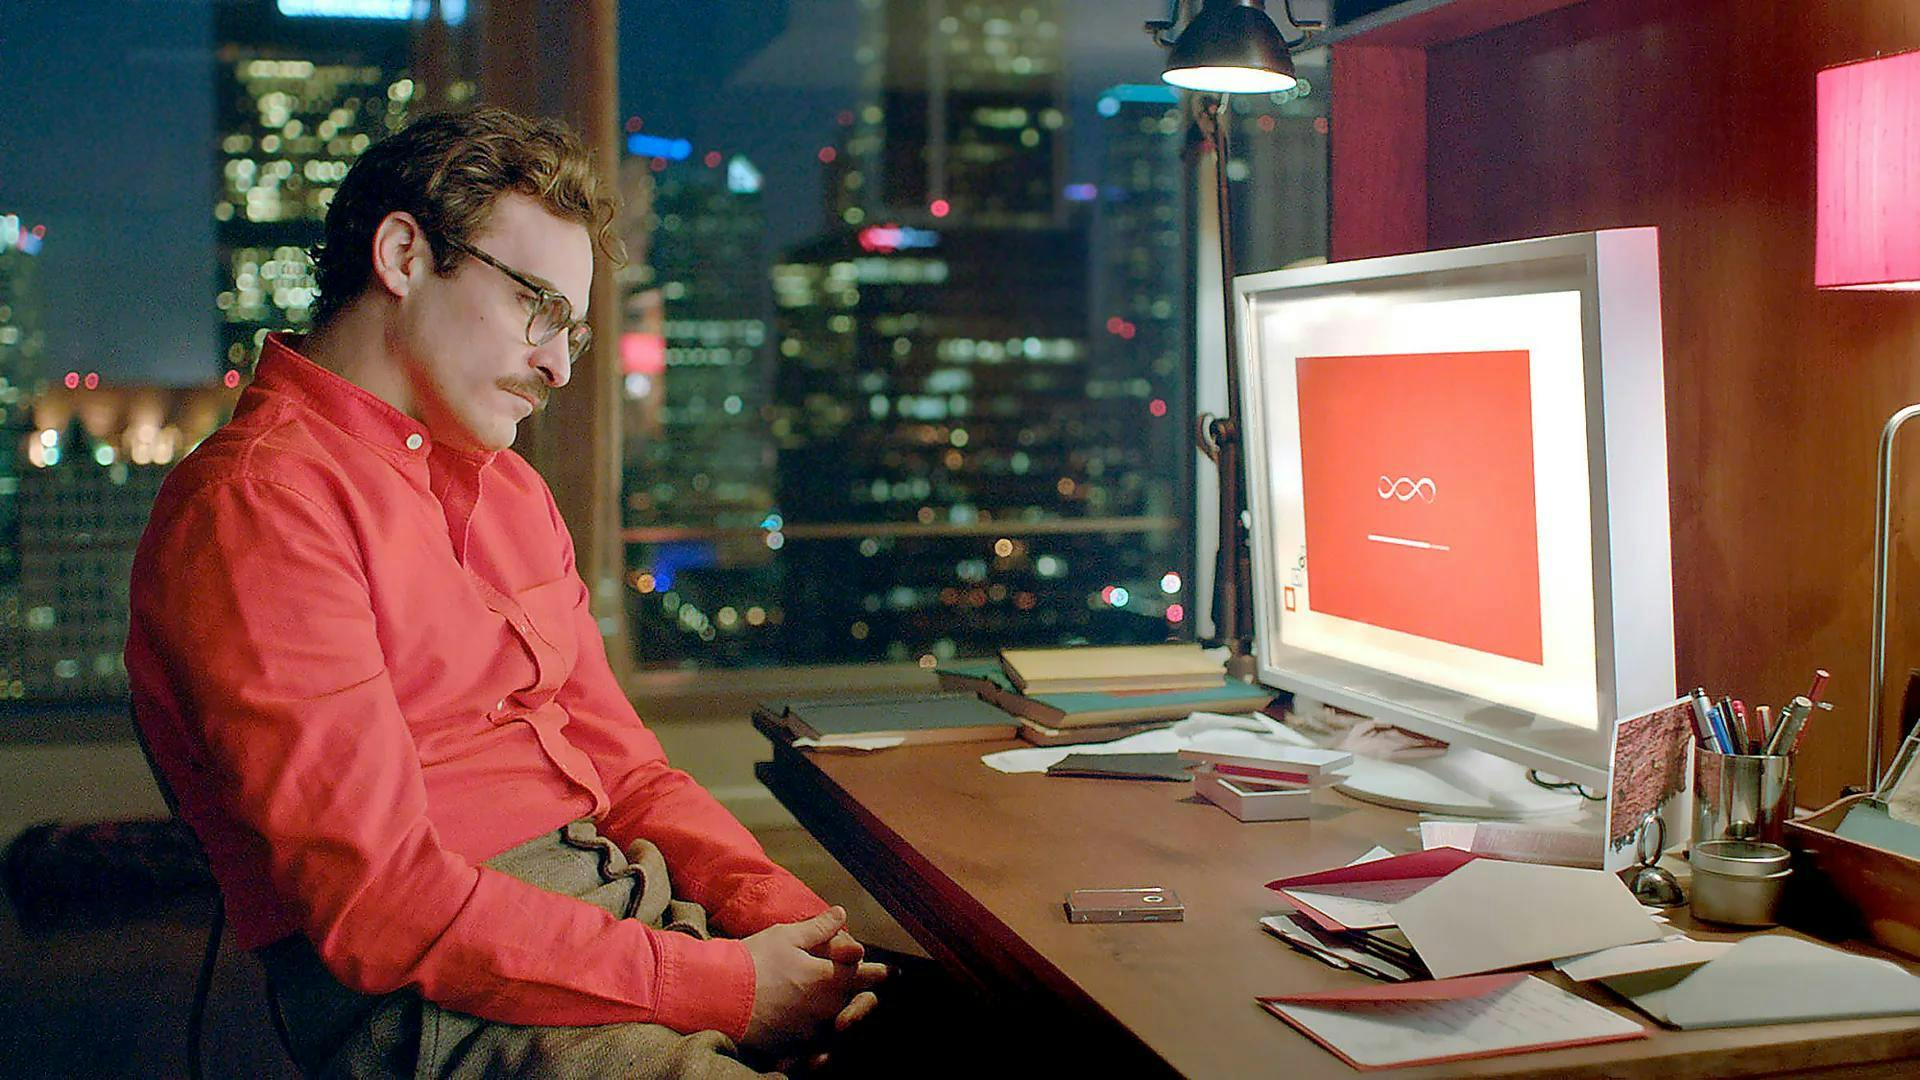 en mann i en rød skjorte sitter ved et skrivebord foran en datamaskin. Bilde fra filmen "Her"